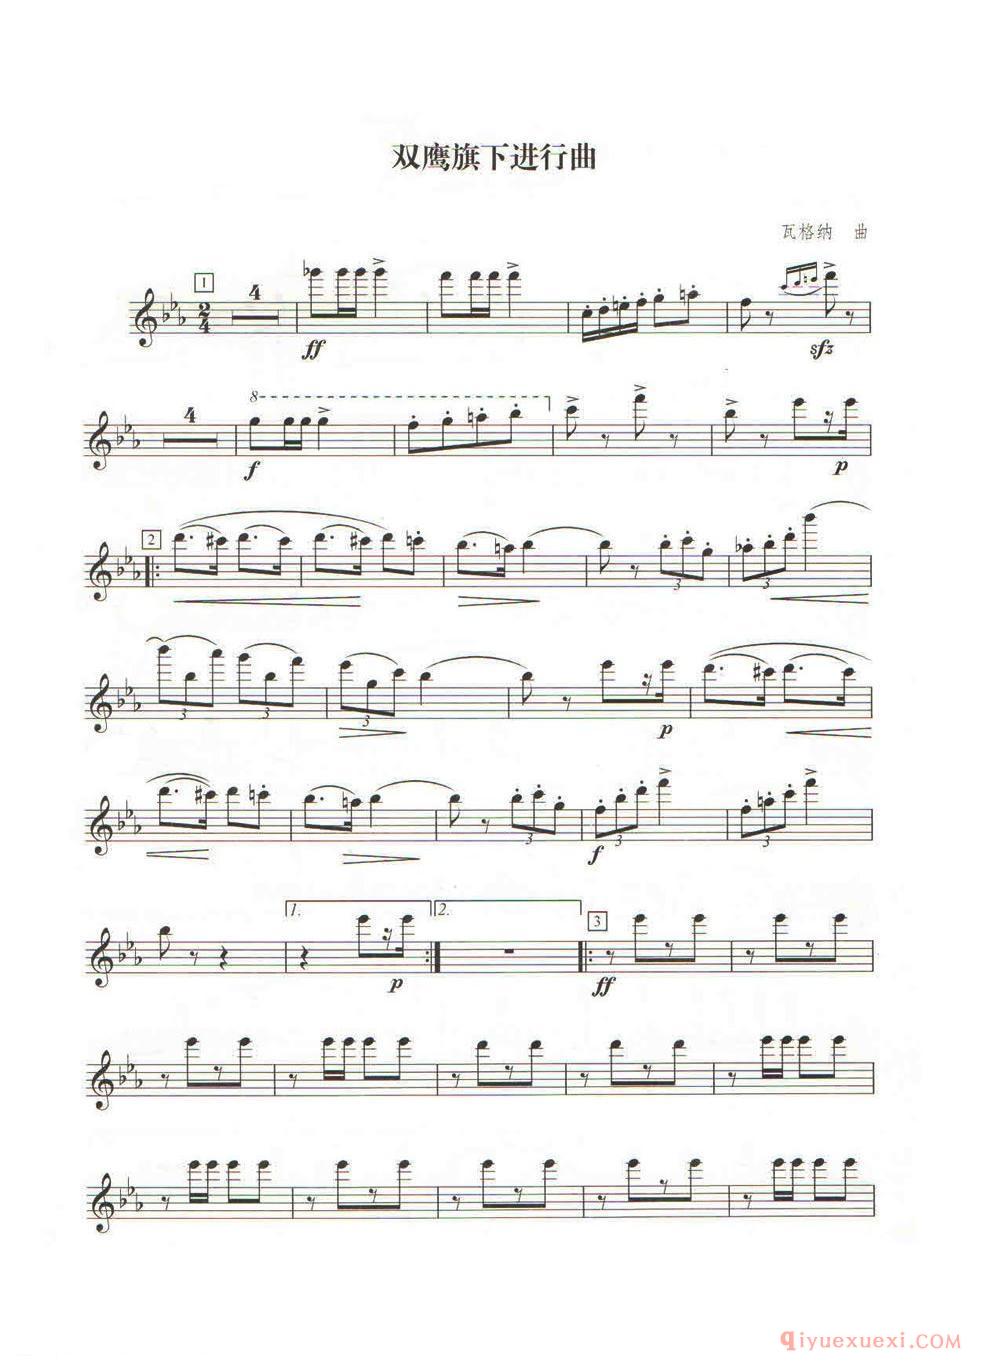 《双鹰旗下进行曲》由奥地利作曲家弗朗兹·瓦格纳作曲，